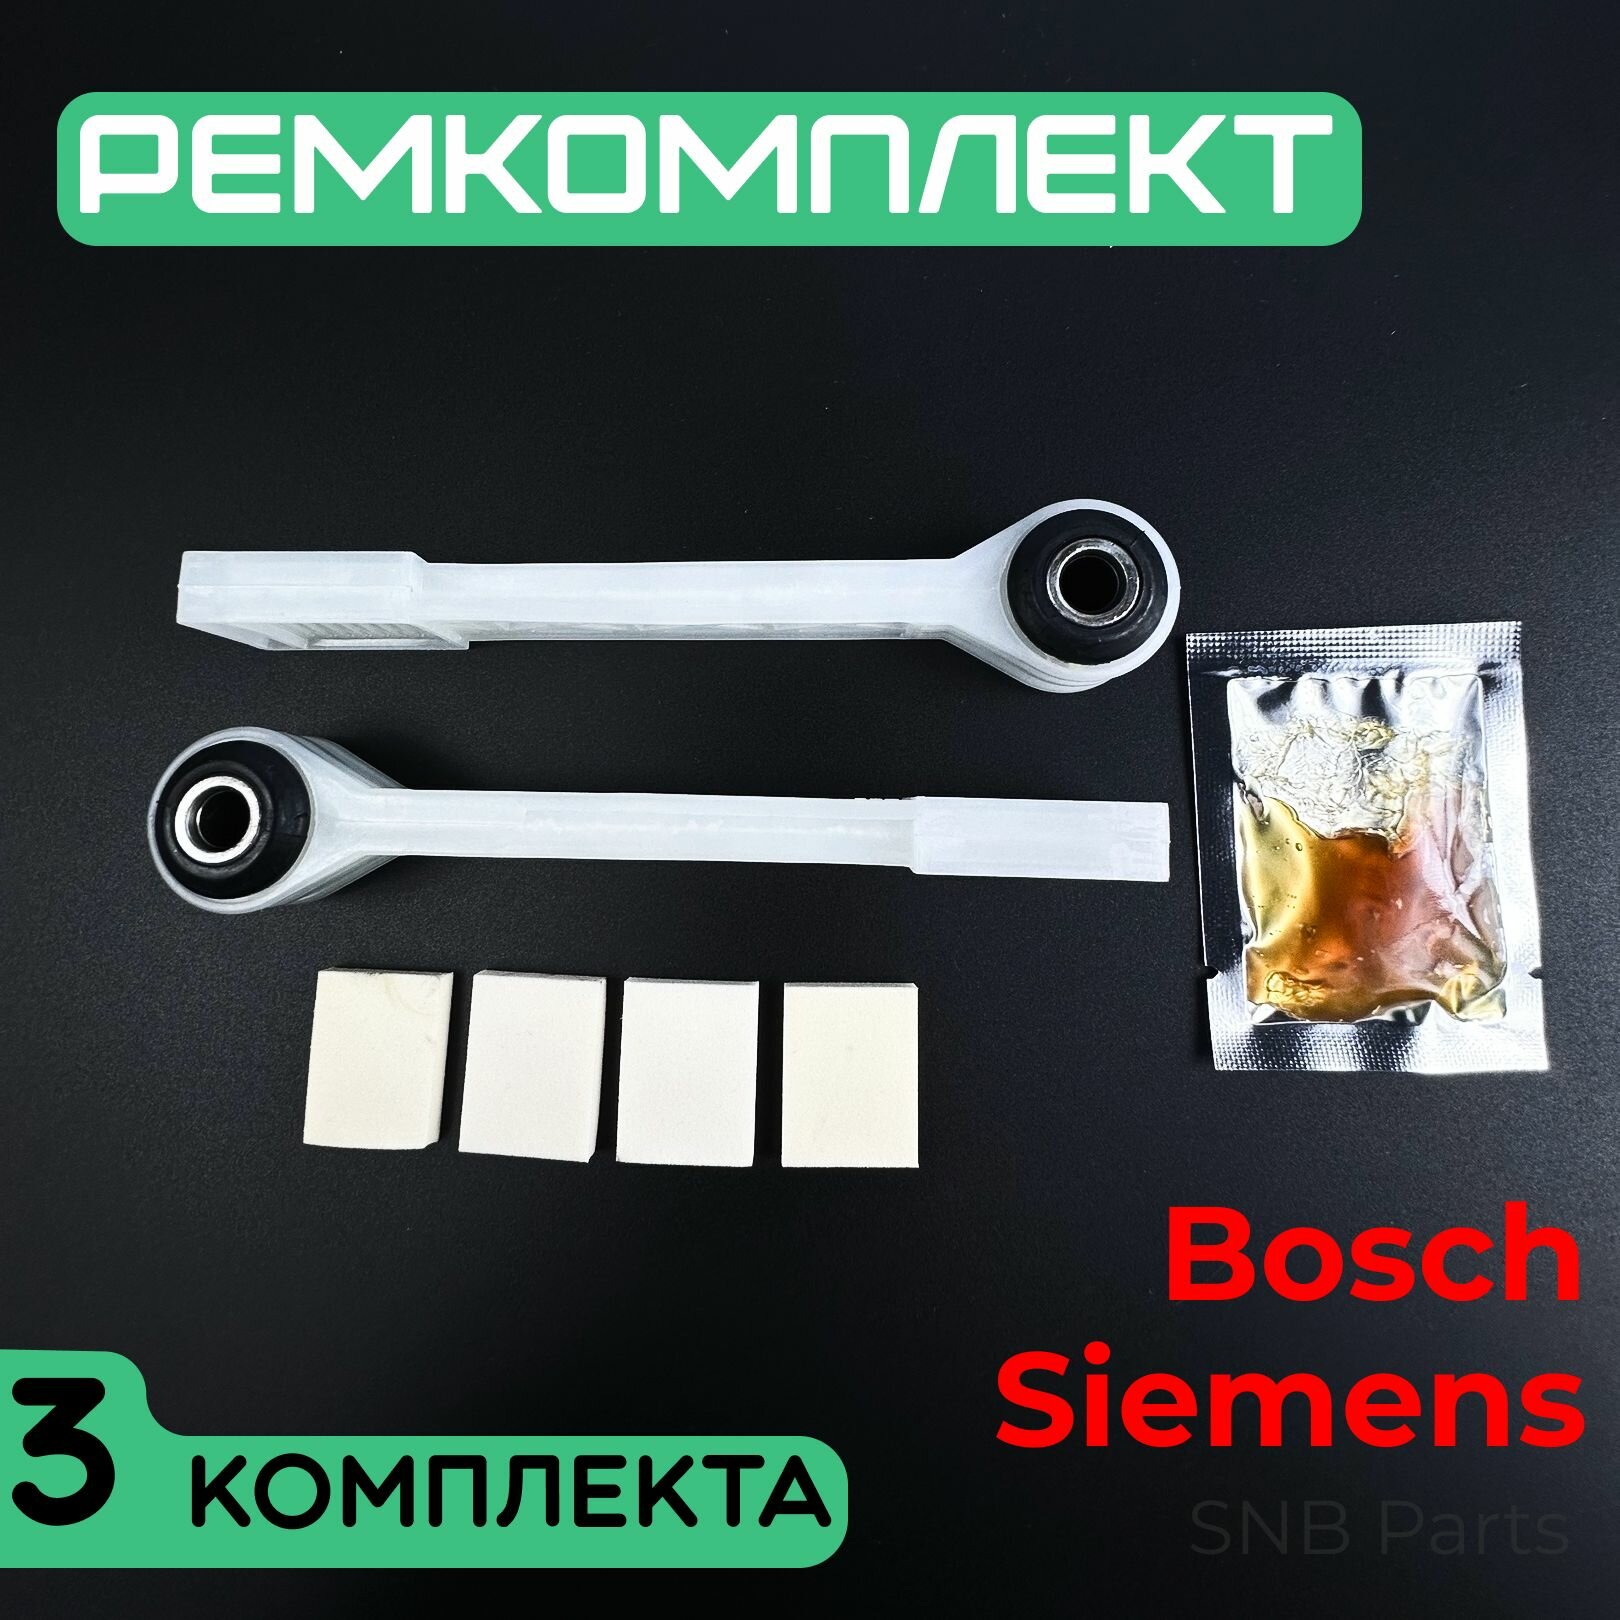 Ремкомплект амортизаторов для стиральной машины Bosch Siemens Neff. Три комплекта по 2 шт. Универсальная запчасть для СМА Бош Сименс. SAR900UN 673541